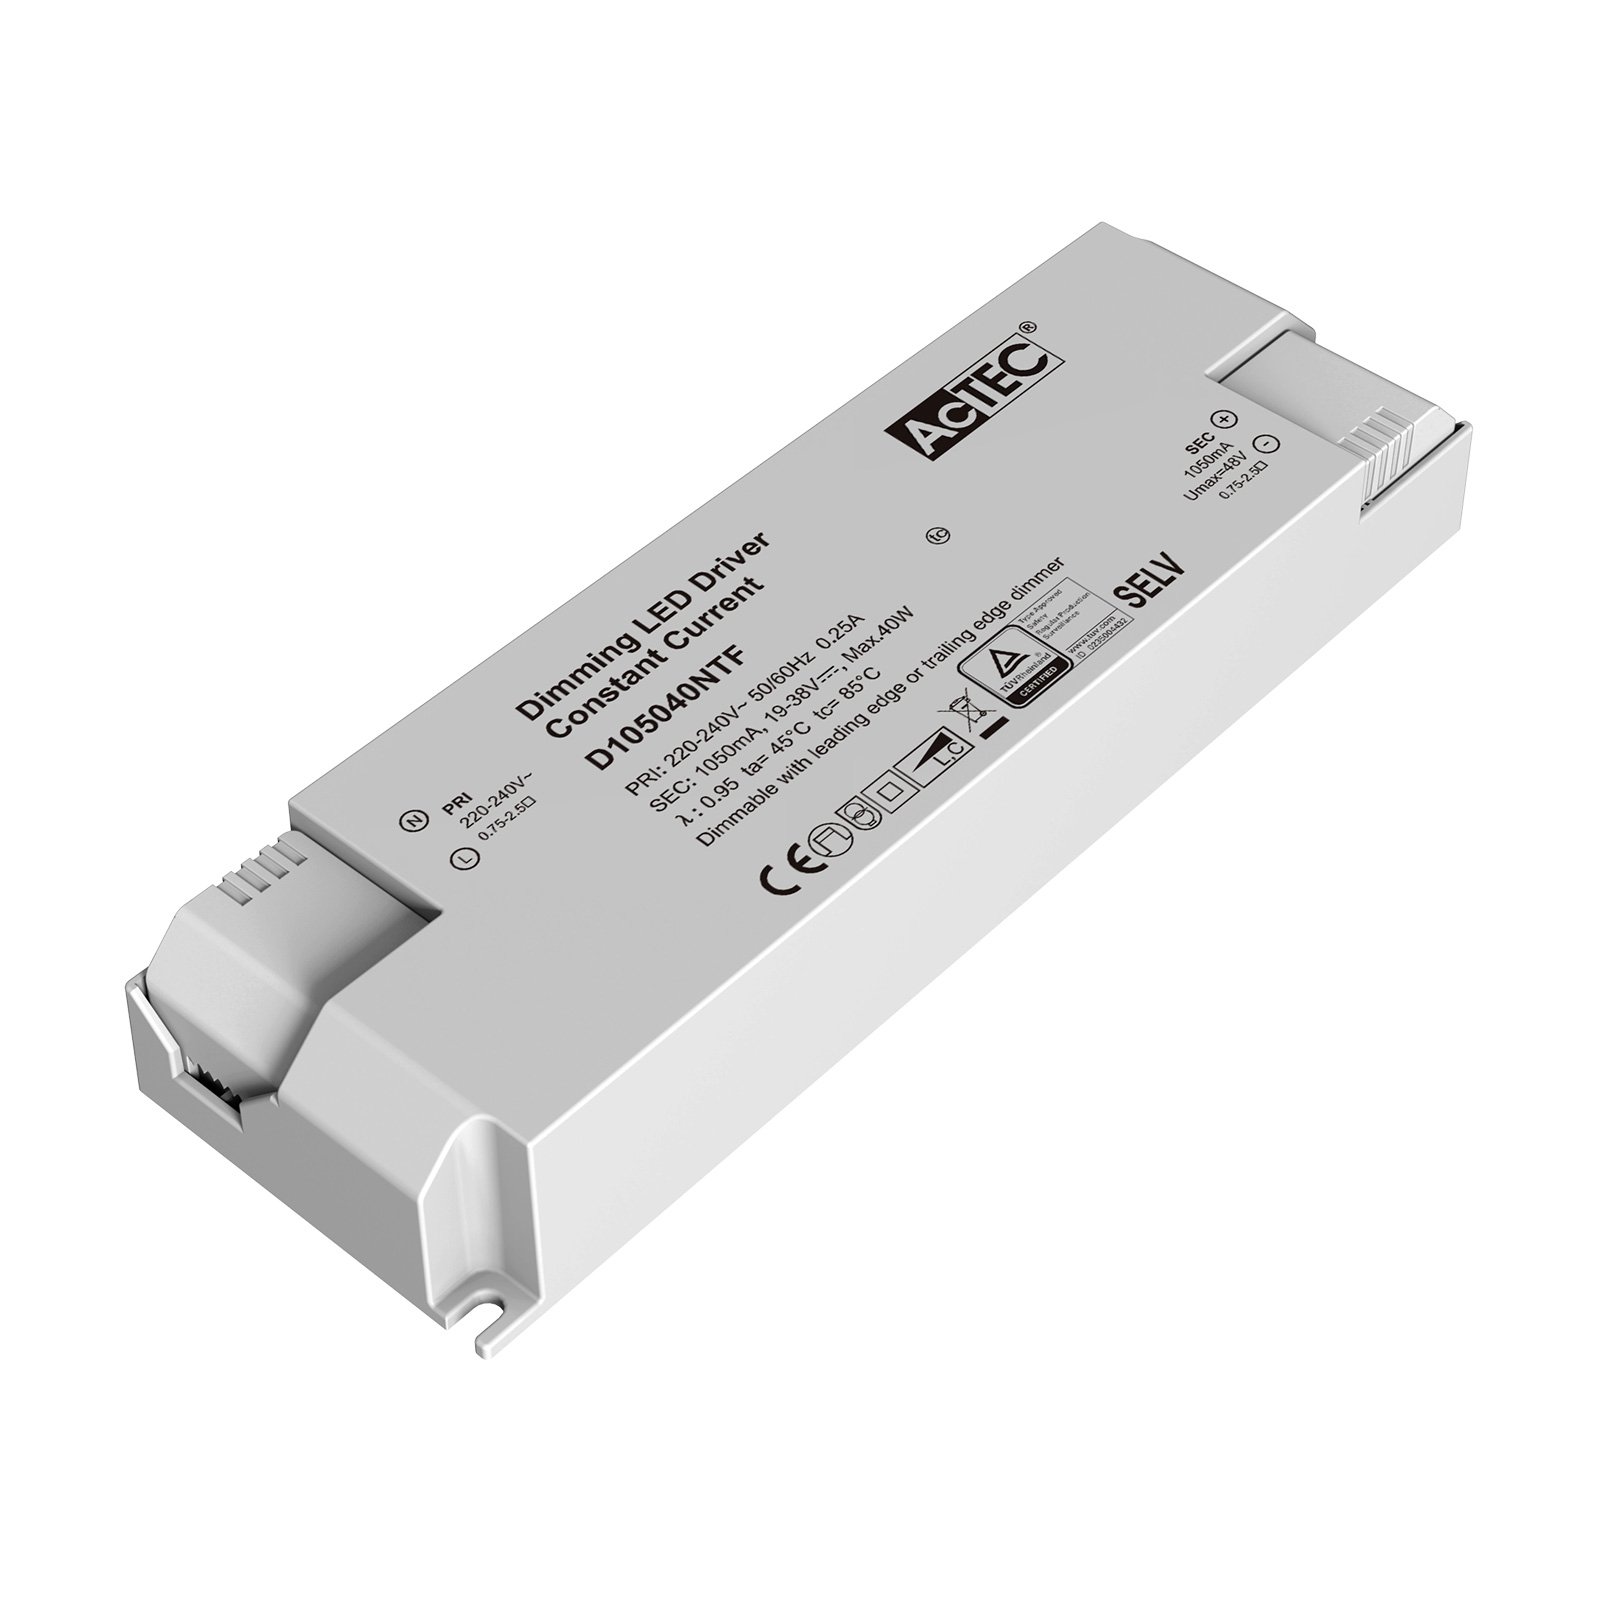 AcTEC Triac -LED-muuntaja CC maks. 40 W, 1 050 mA